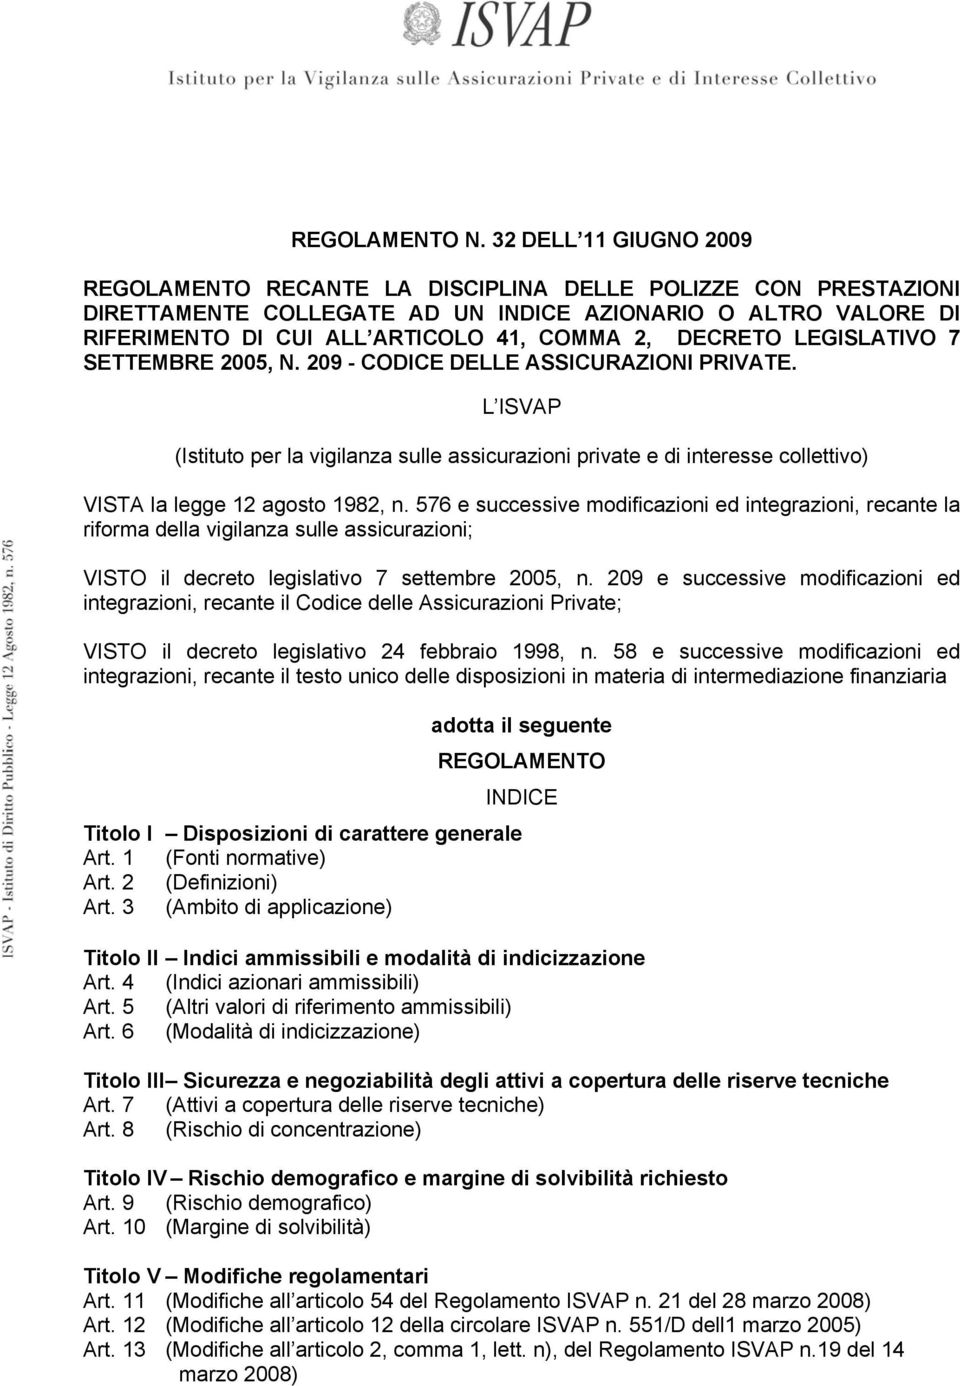 DECRETO LEGISLATIVO 7 SETTEMBRE 2005, N. 209 - CODICE DELLE ASSICURAZIONI PRIVATE.